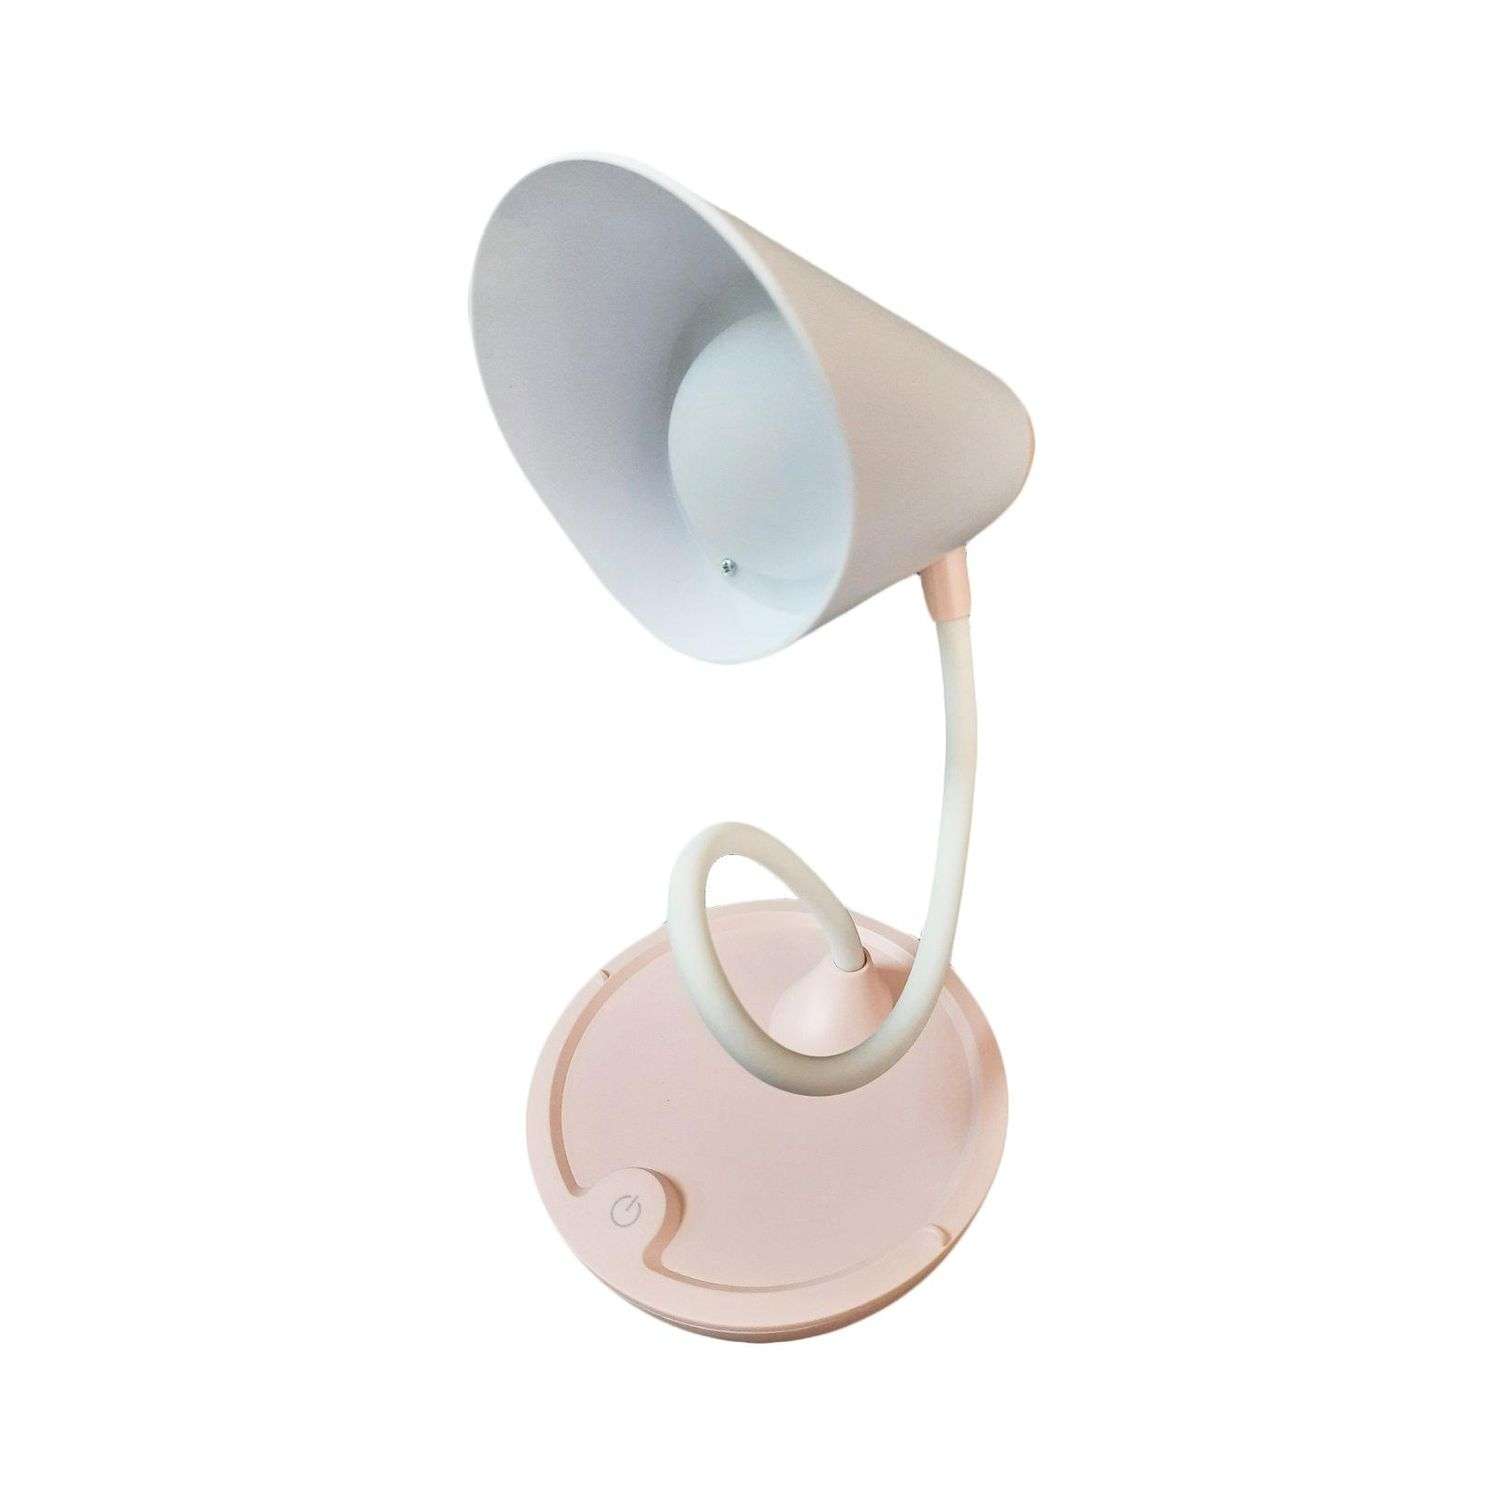 Лампа Beroma светодиодная с подставкой для телефона розовая - фото 1